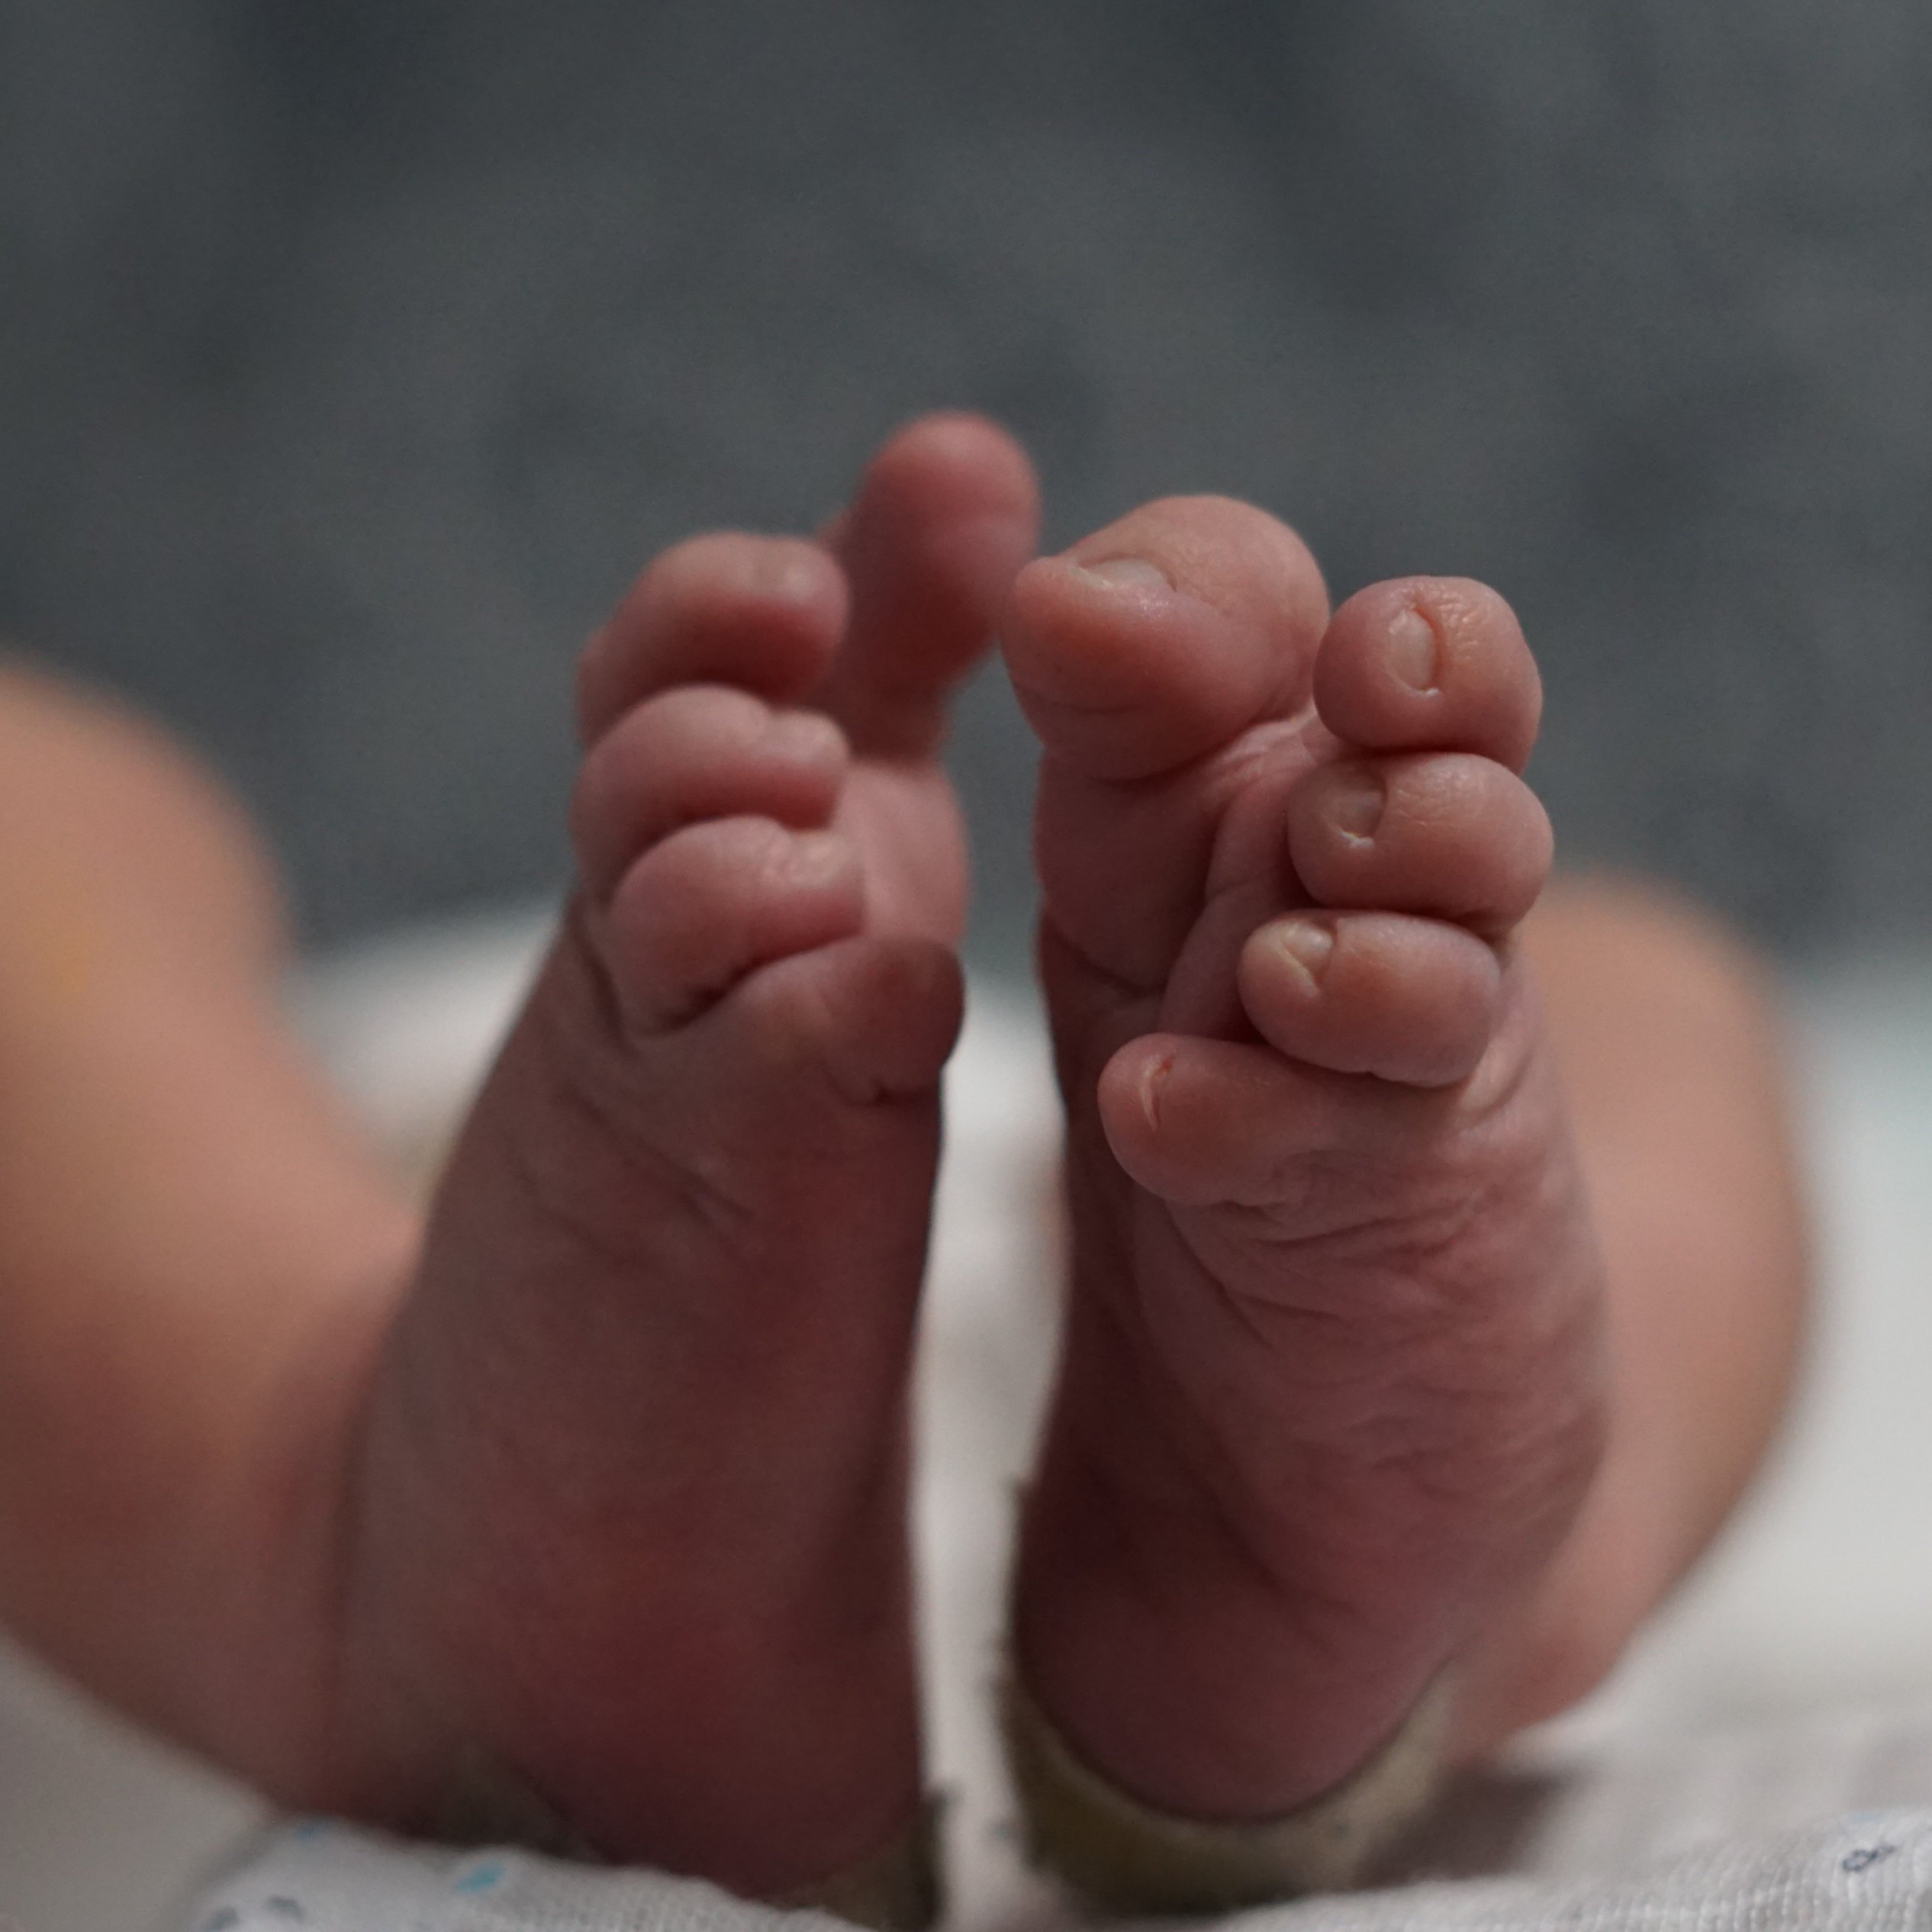 Quins protocols segueixen els hospitals per evitar l'intercanvi de nadons?